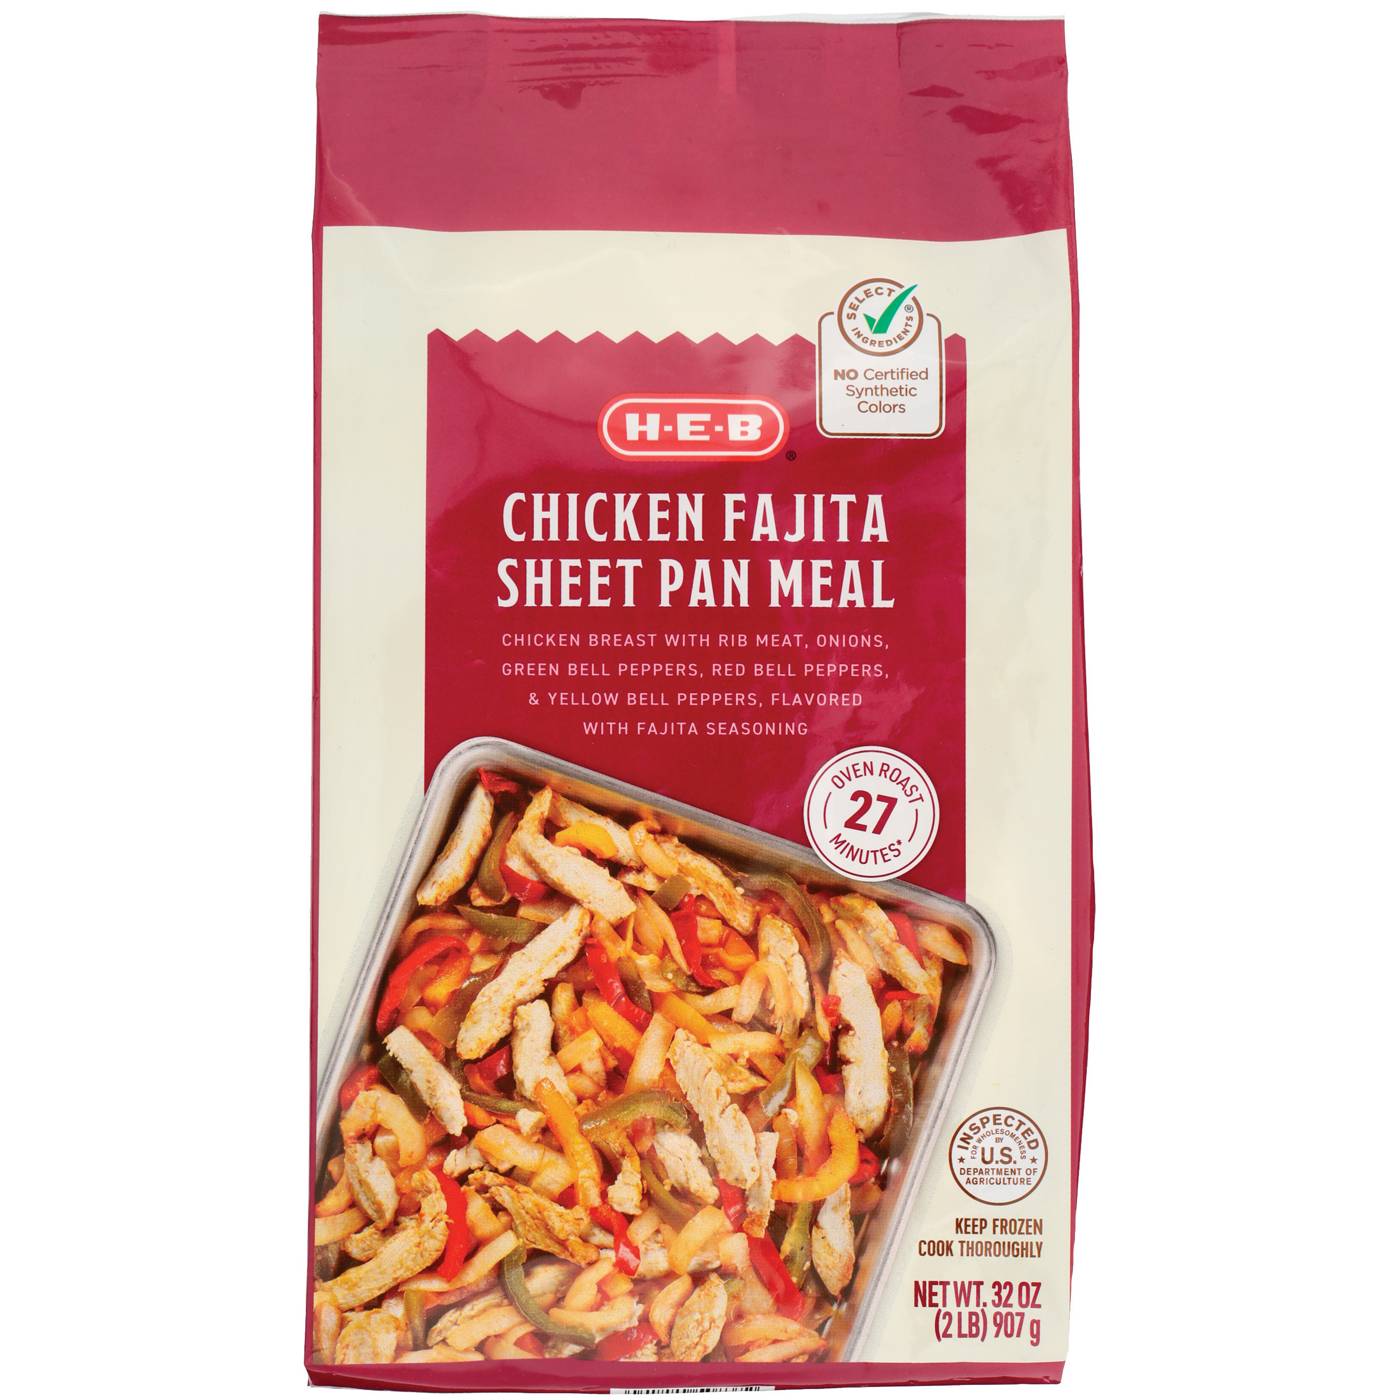 H-E-B Frozen Sheet Pan Meal - Chicken Fajita; image 1 of 2